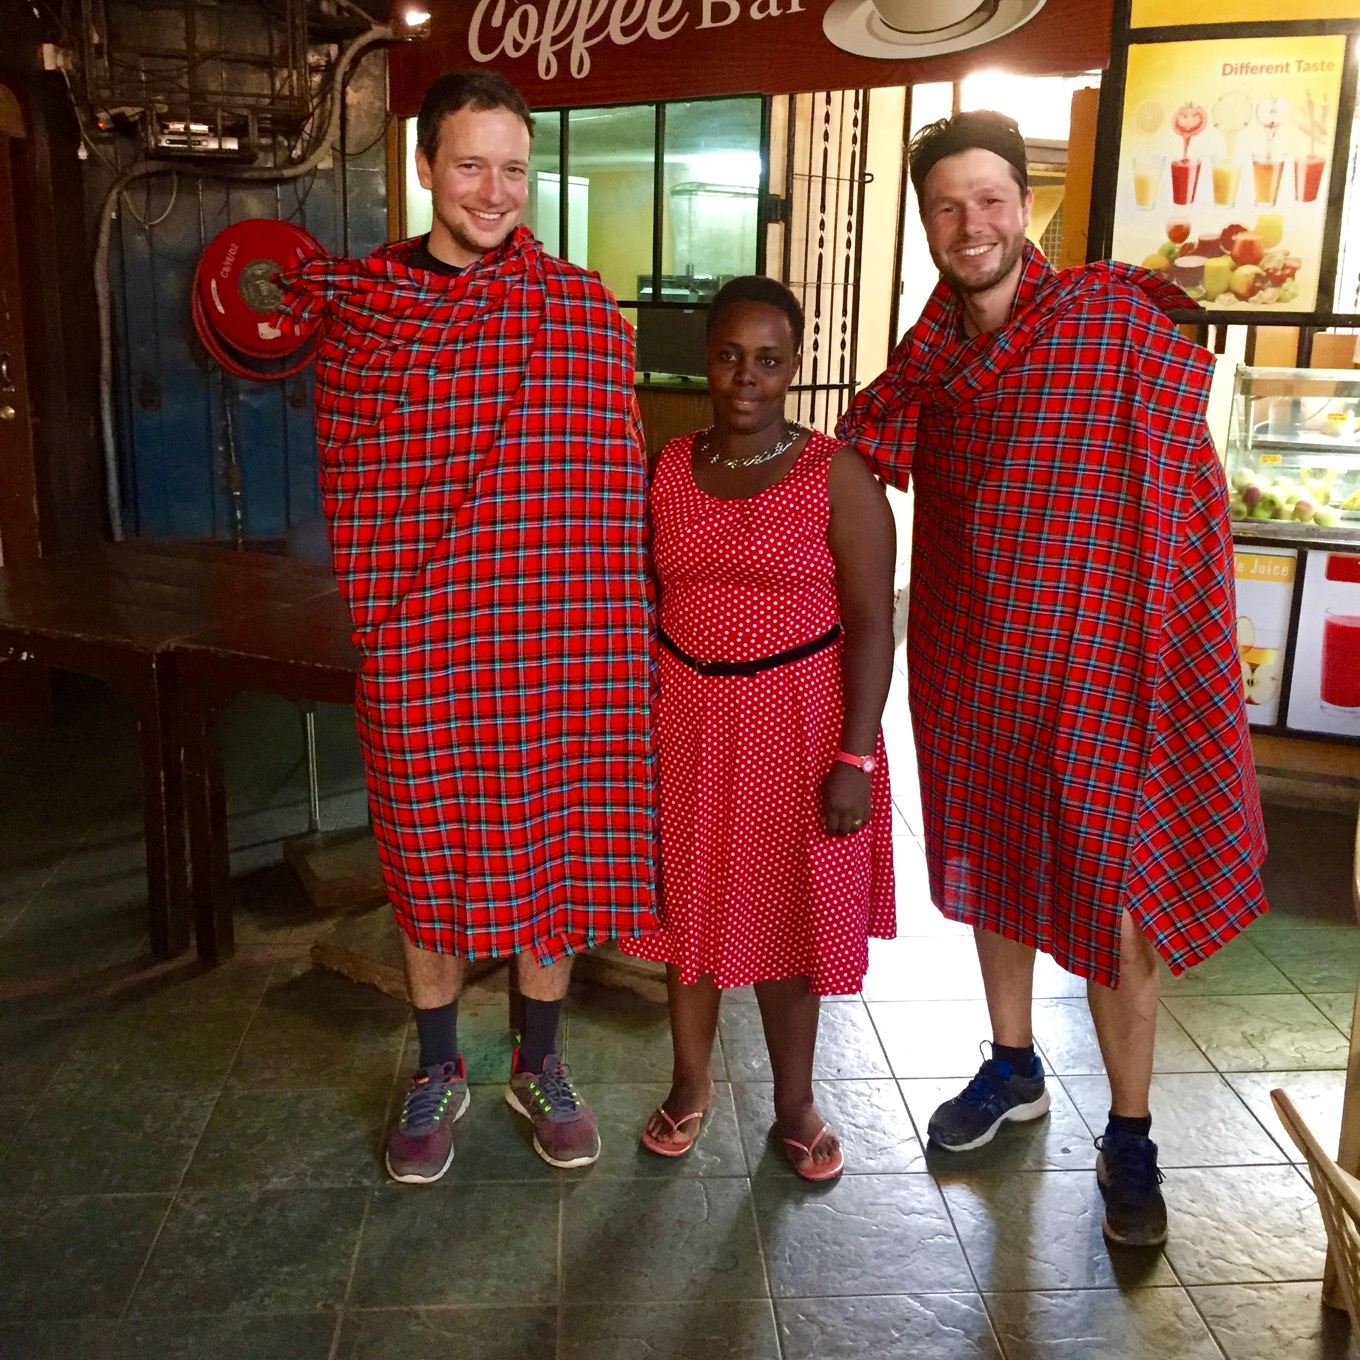 Masai ceremonial robes as present as souvenir